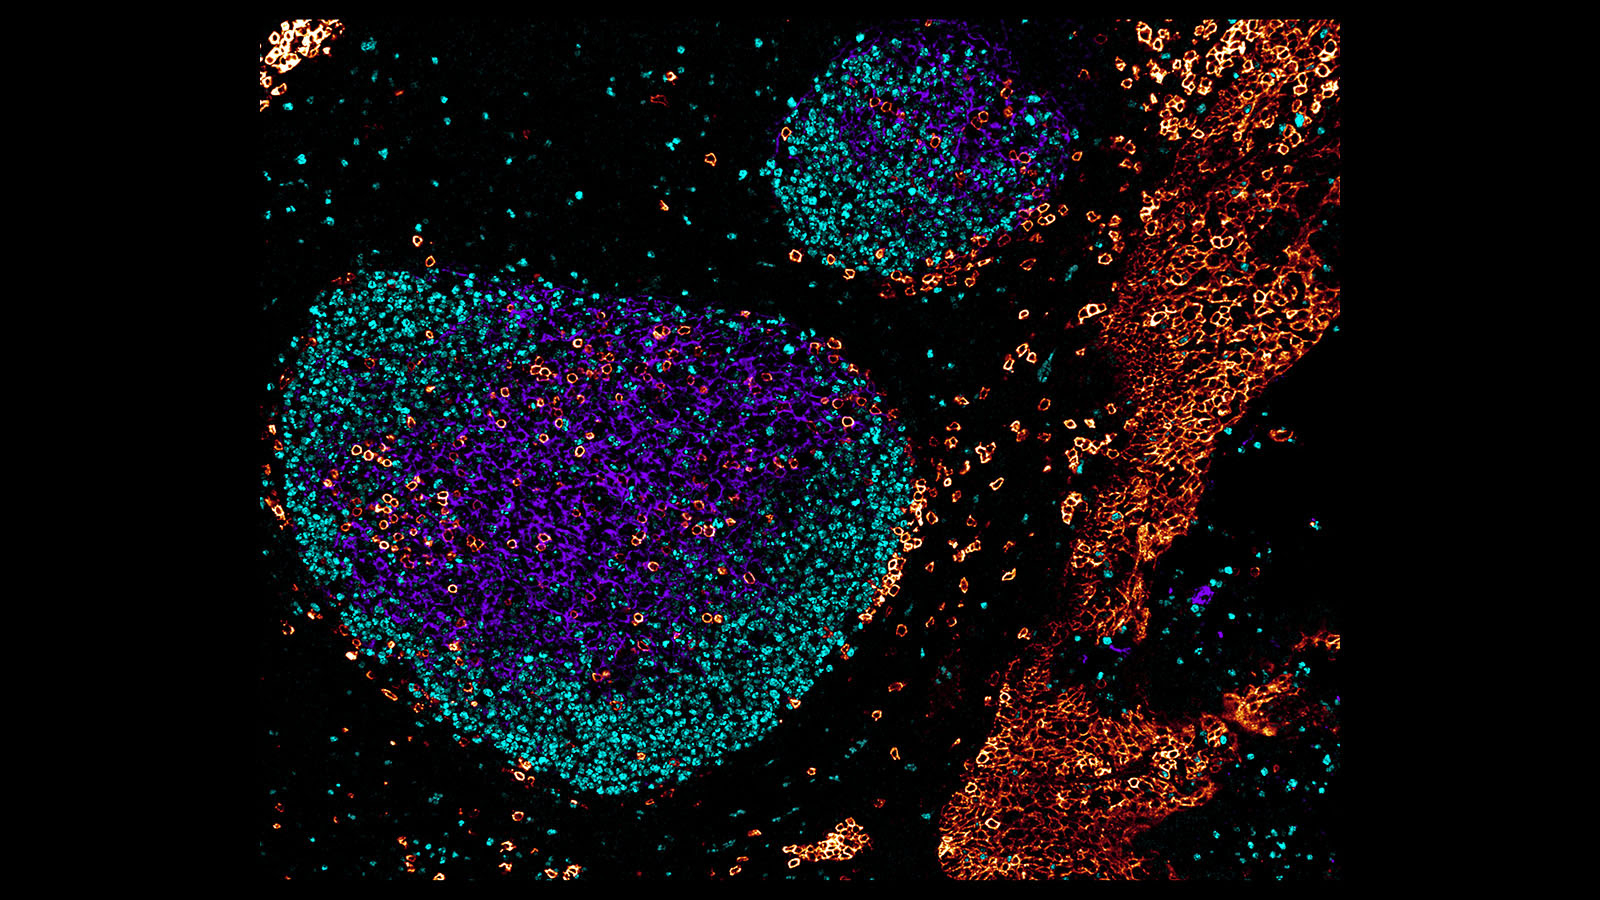 편도선은 인간 면역시스템의 첫 번째 방어선이다. 독일 연구진이 공초점 현미경으로 촬영한 편도선의 조직과 세포. 사진에서 볼 수 있듯 편도선은 세 종류의 다른 세포들로 구성돼 있다. 흔히 조직은 한 종류의 세포로 구성돼 있을 것으로 생각하지만 다양한 세포로 구성돼 있다. HuBMAP 제공